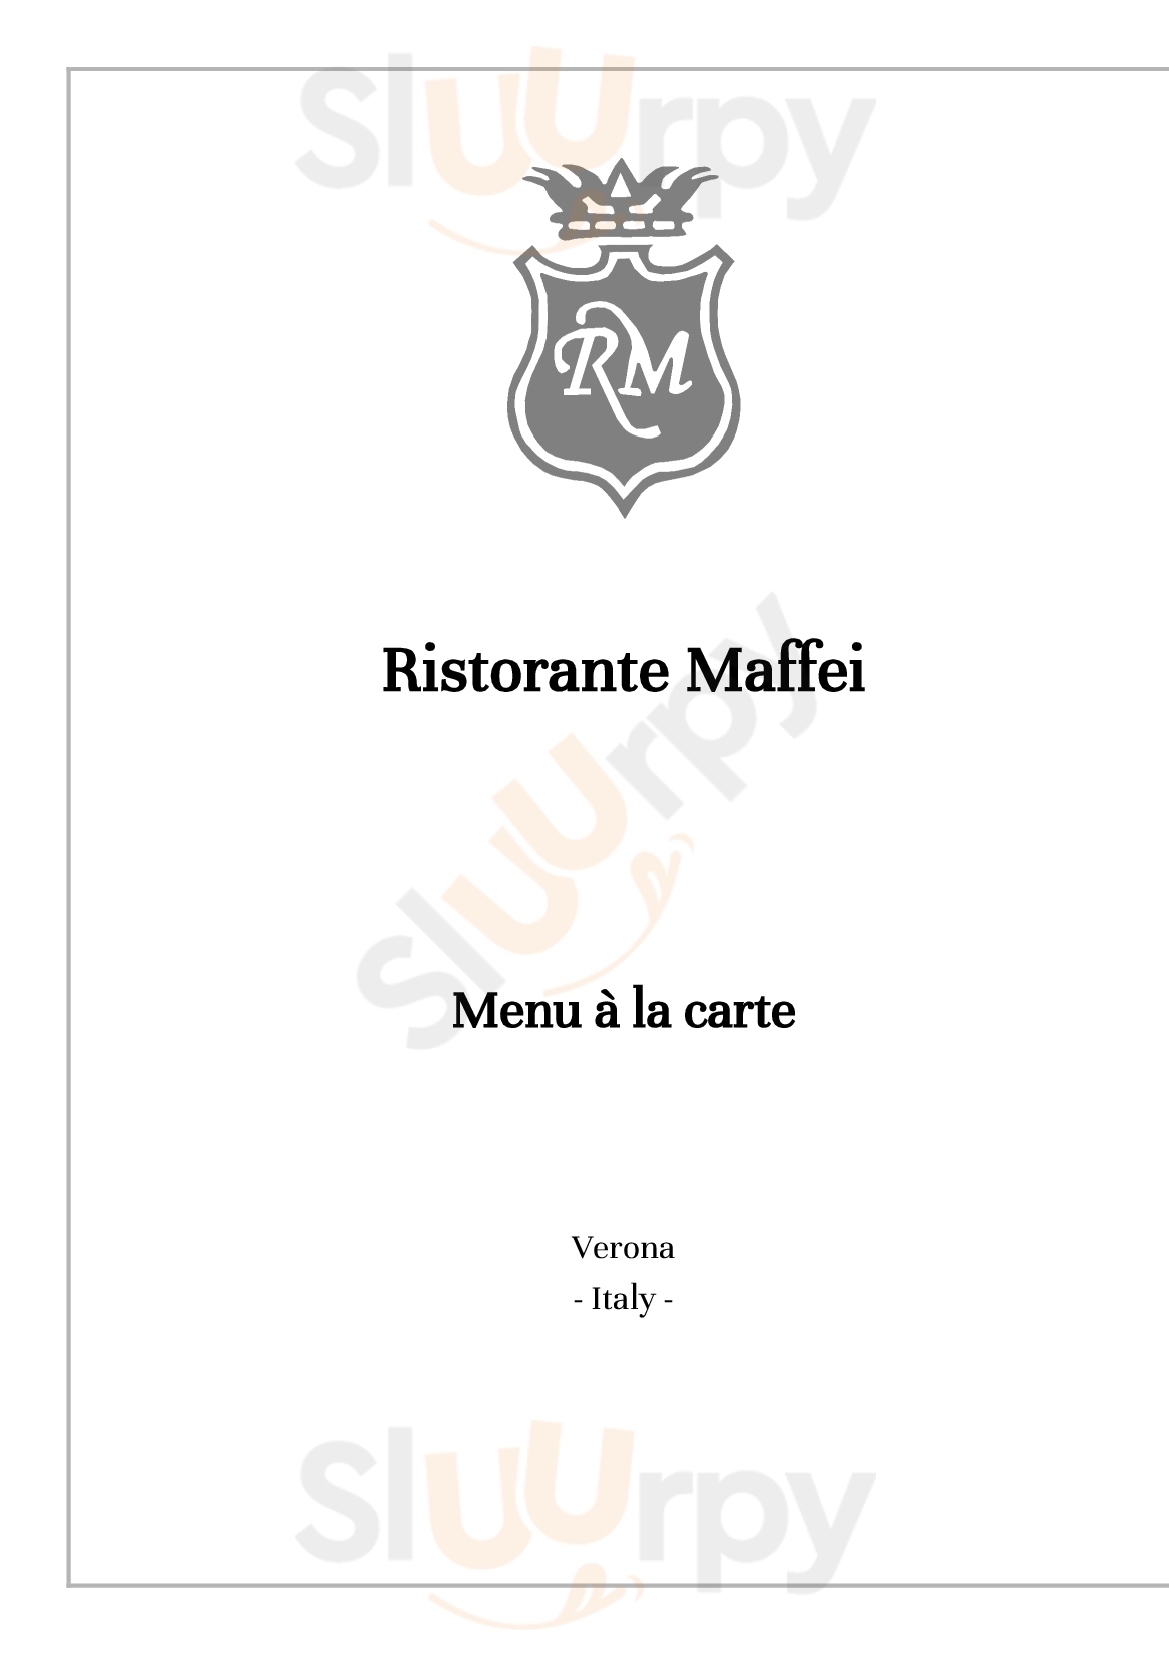 Ristorante Maffei Verona menù 1 pagina